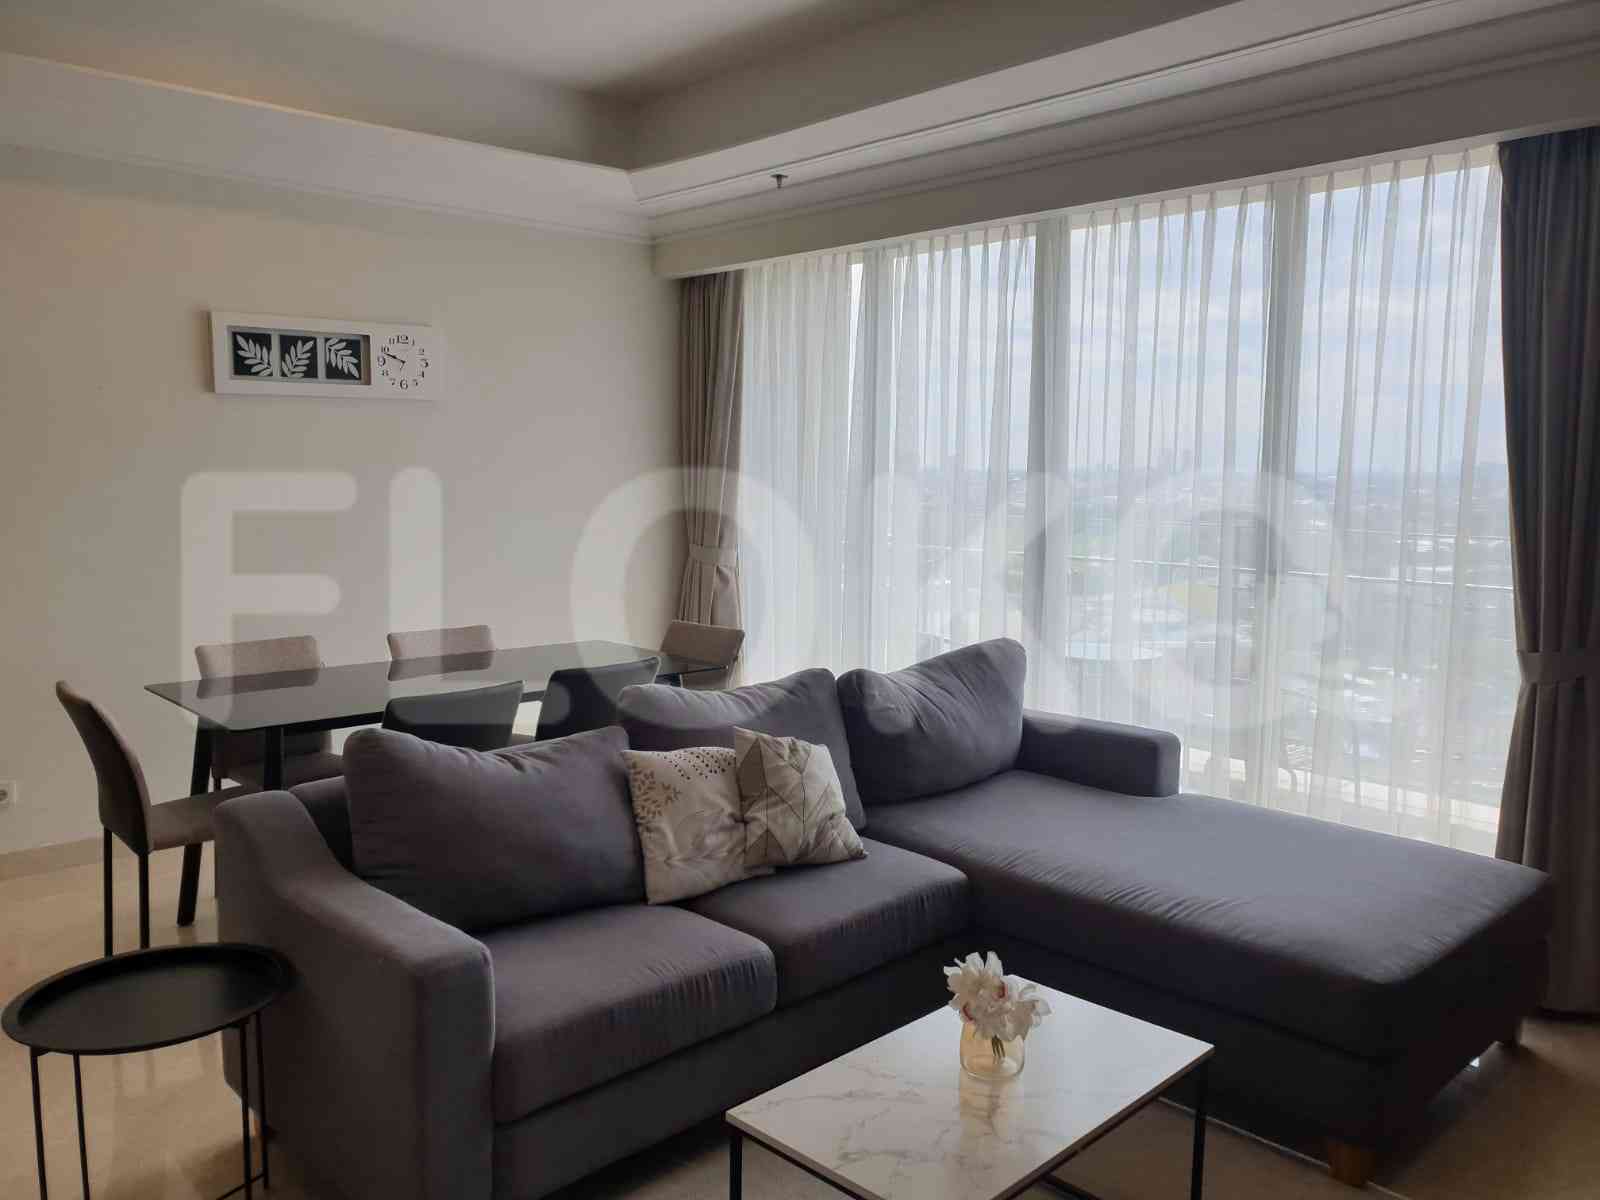 3 Bedroom on 15th Floor for Rent in Pondok Indah Residence - fpo34e 1